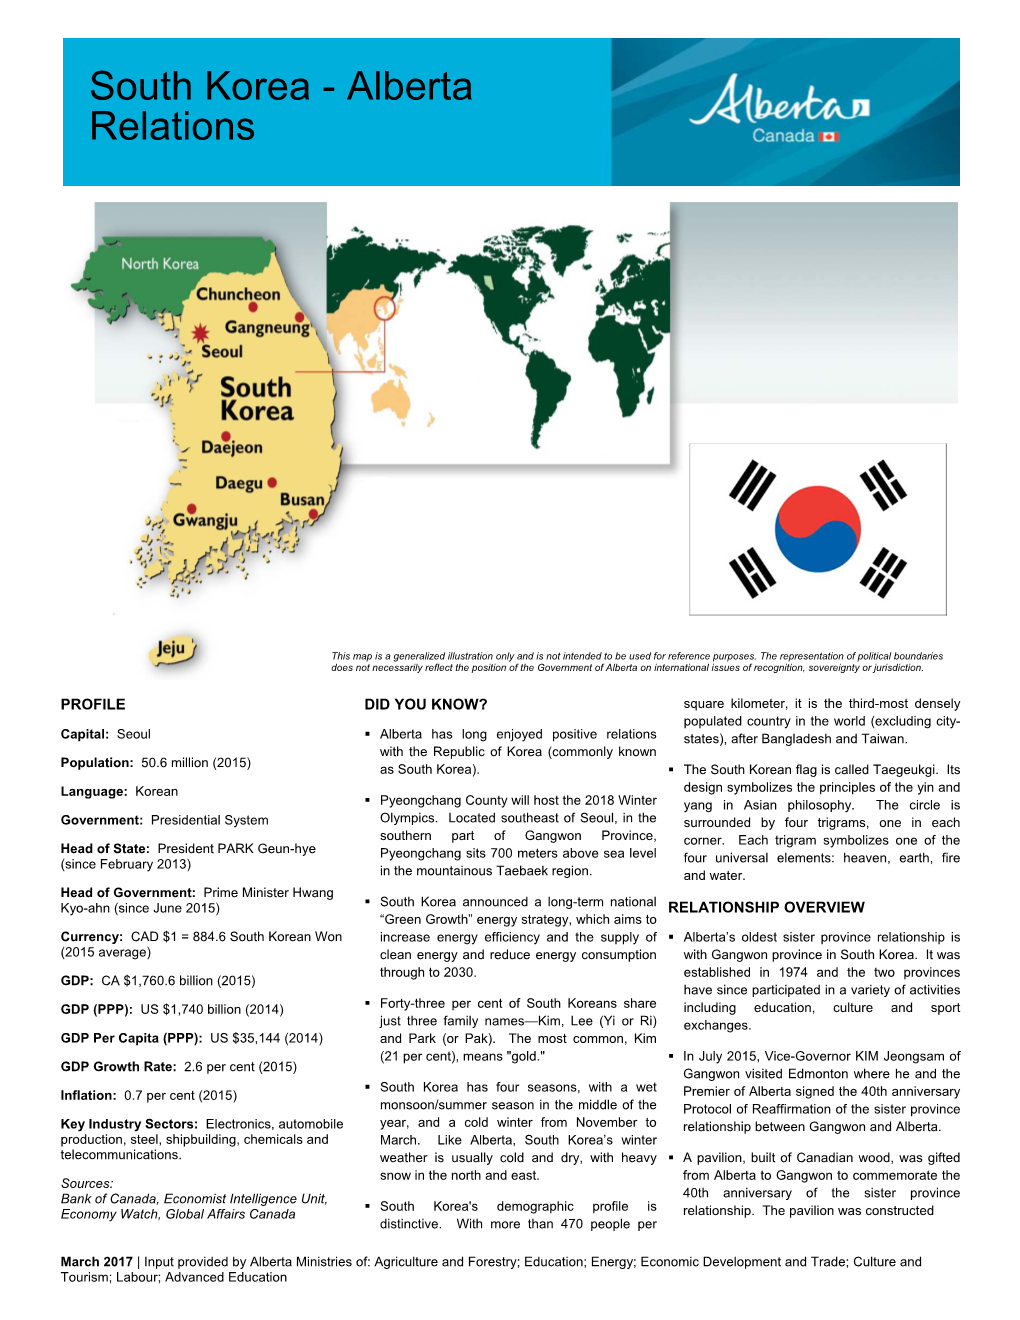 South Korea - Alberta Relations